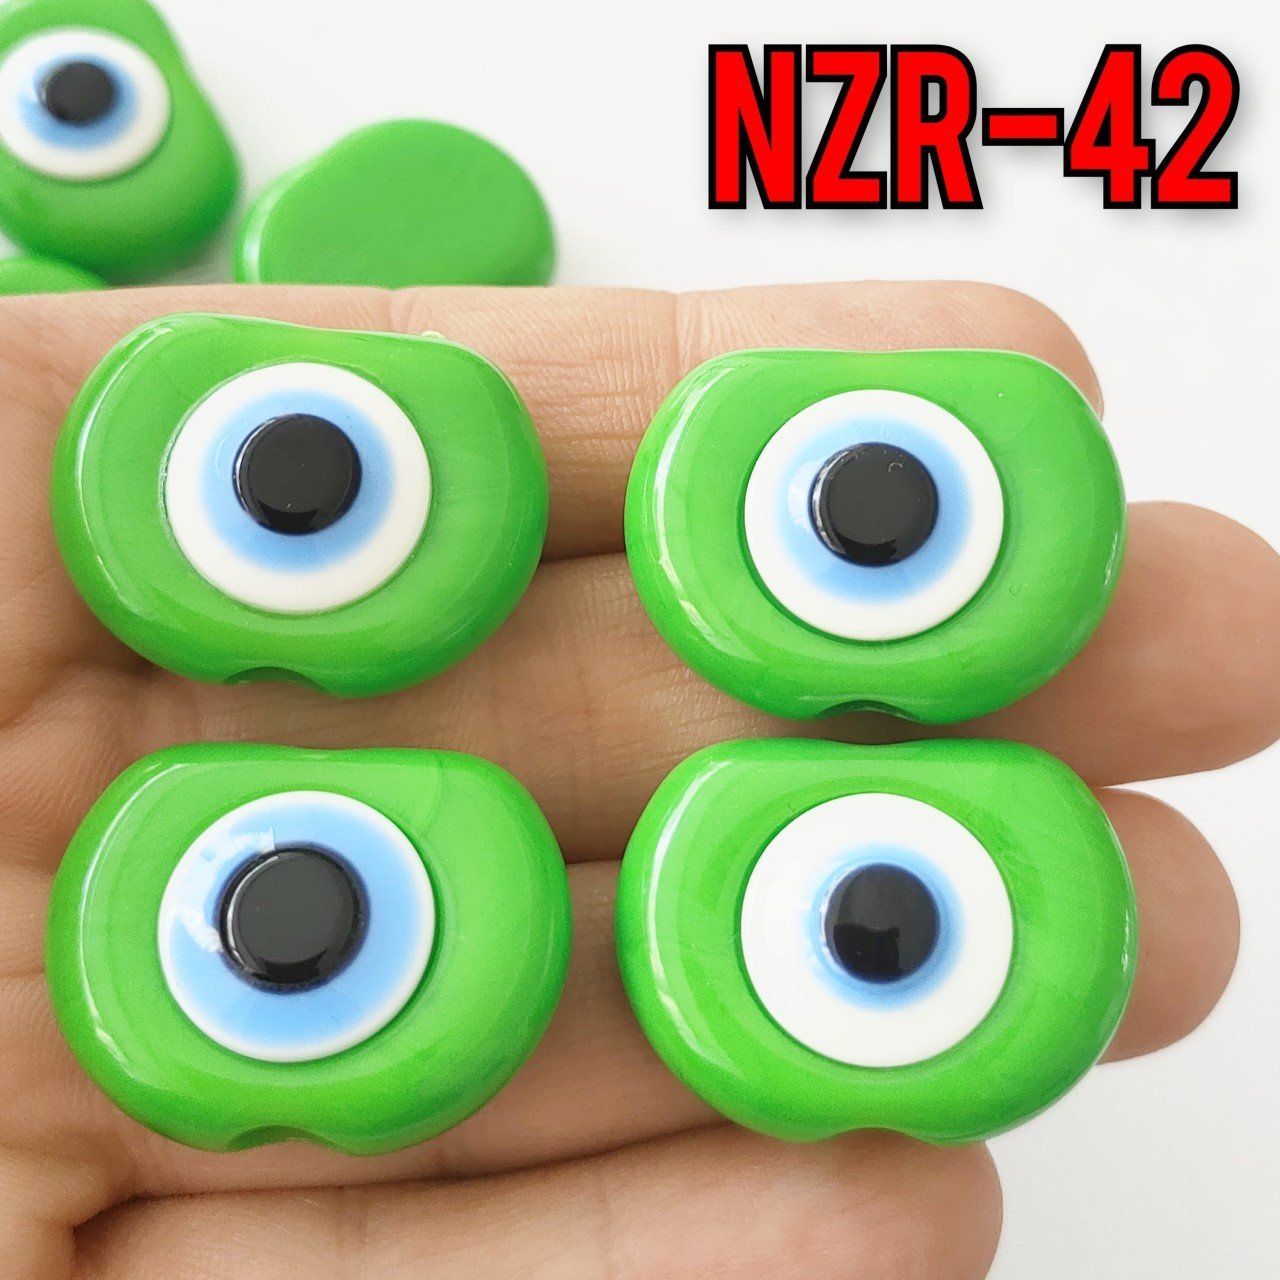 NZR-42 Büyük Boy Akrilik Nazar Boncuğu Yeşil